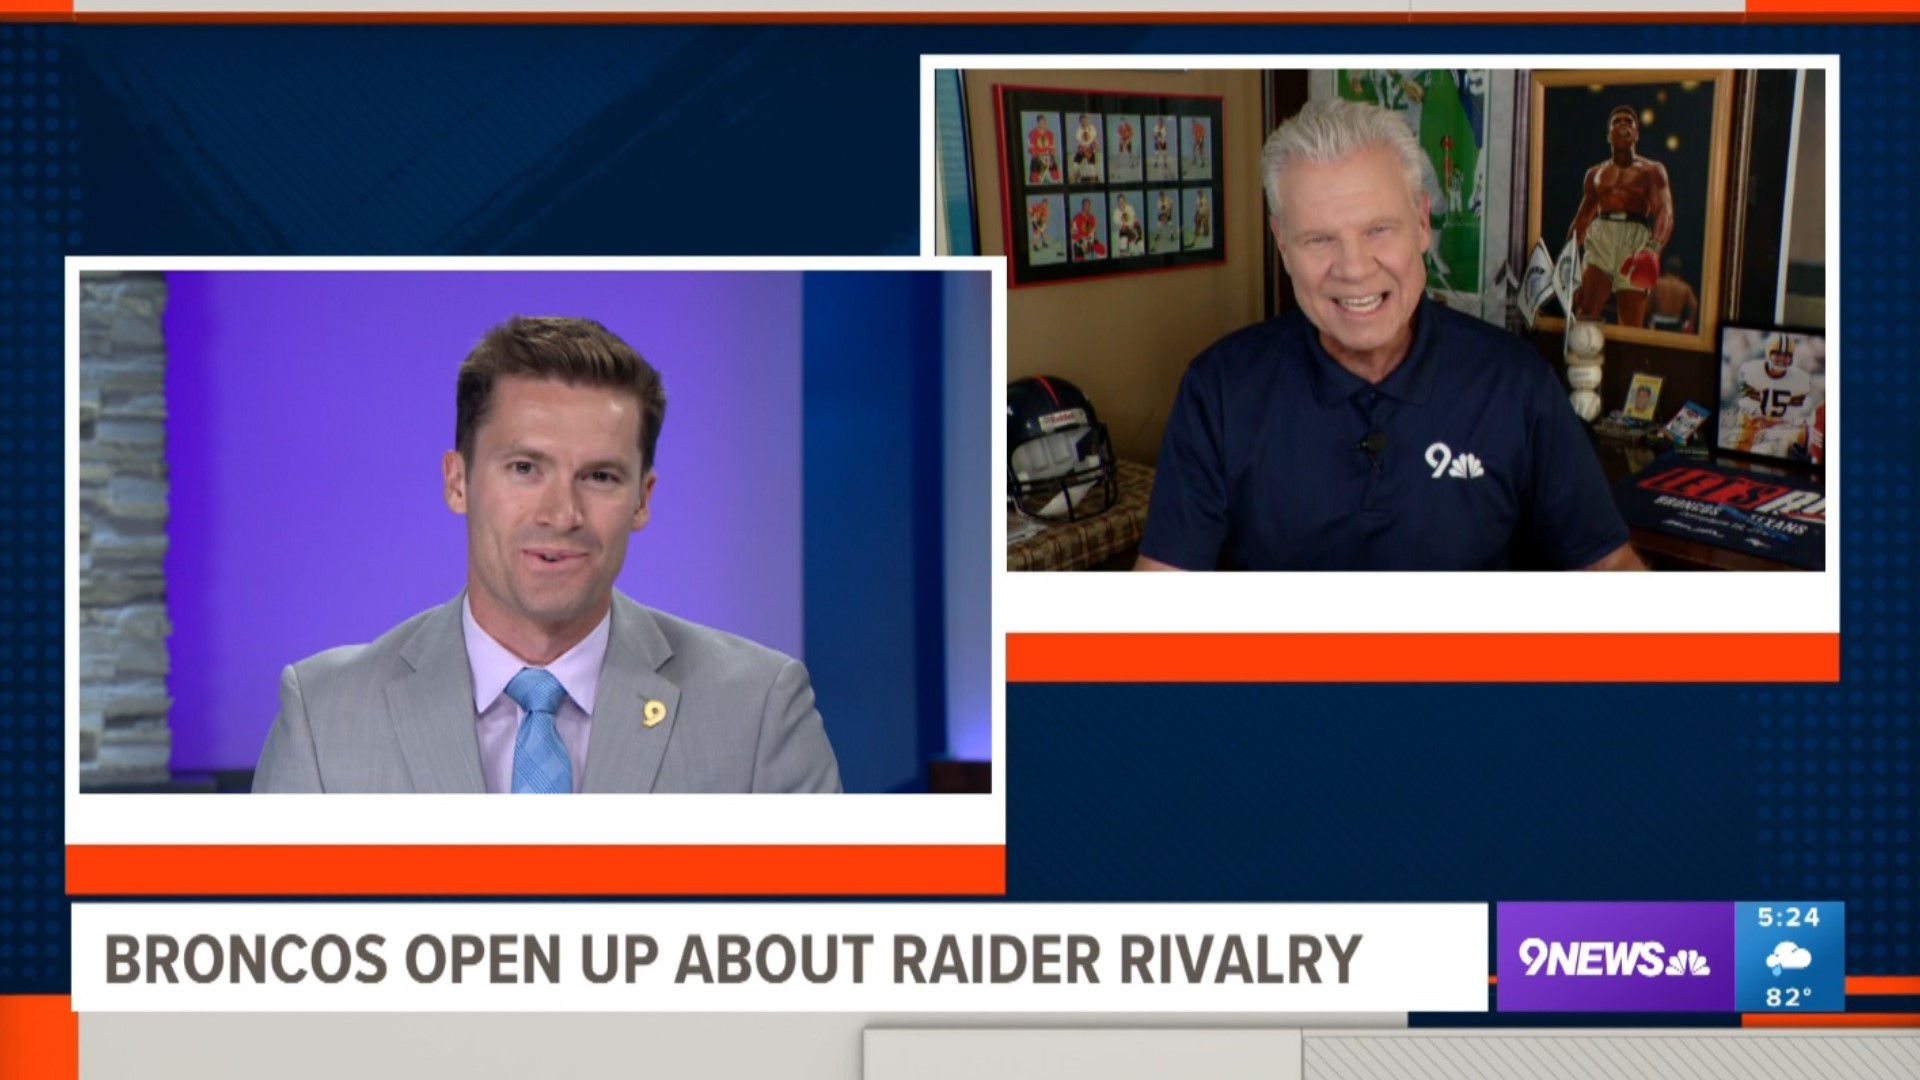 Broncos' Sean Payton discusses Raiders ahead of Week 1 game